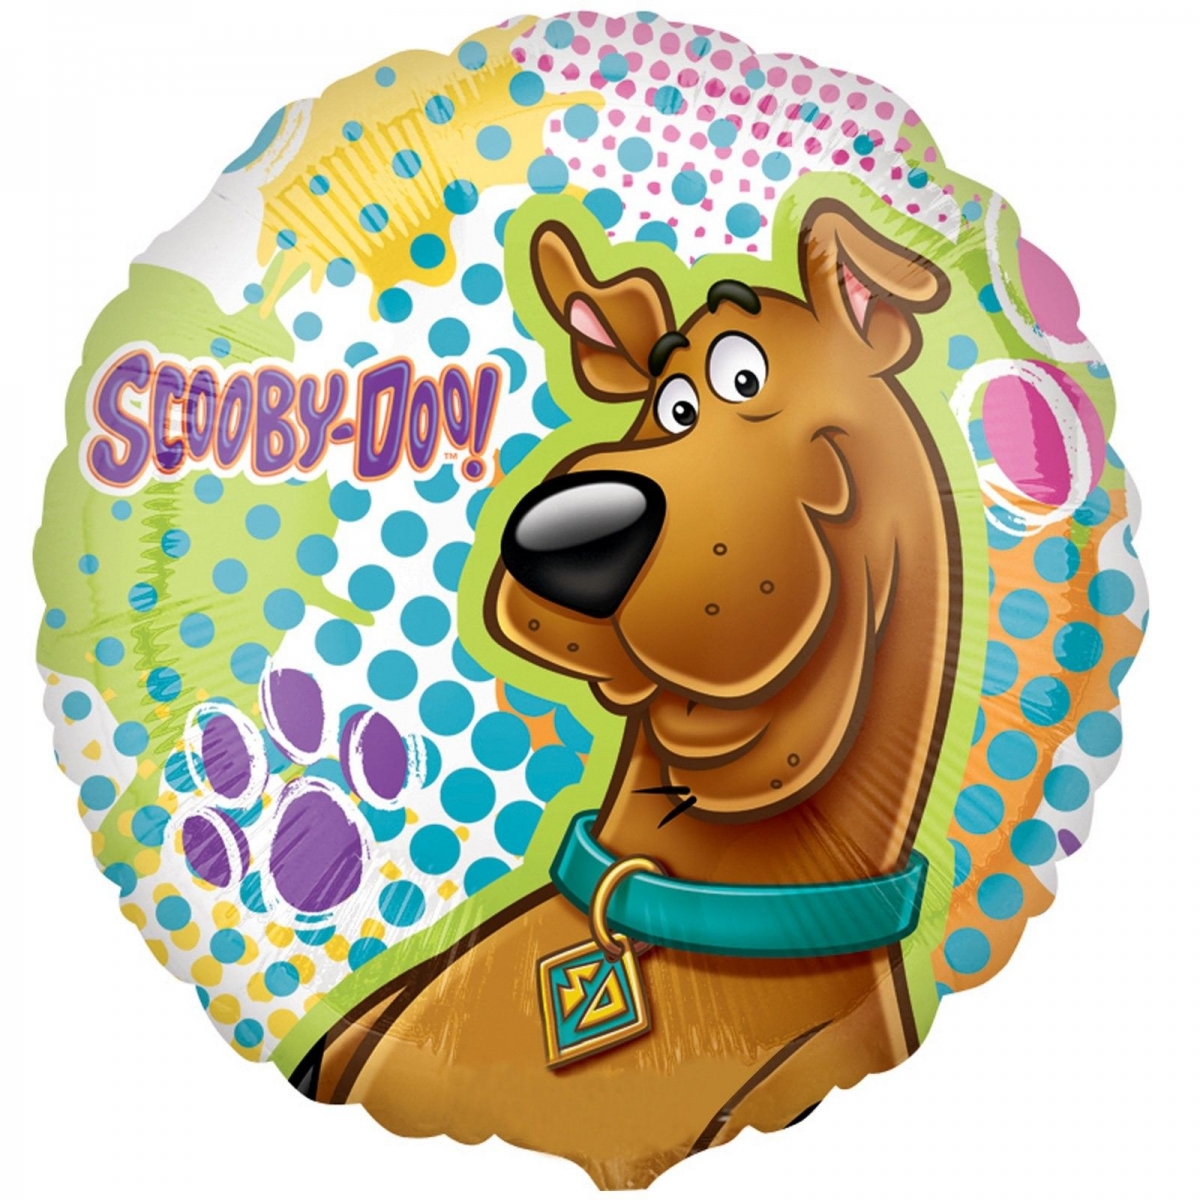 18" Foil - Scooby Doo Pattern balloon